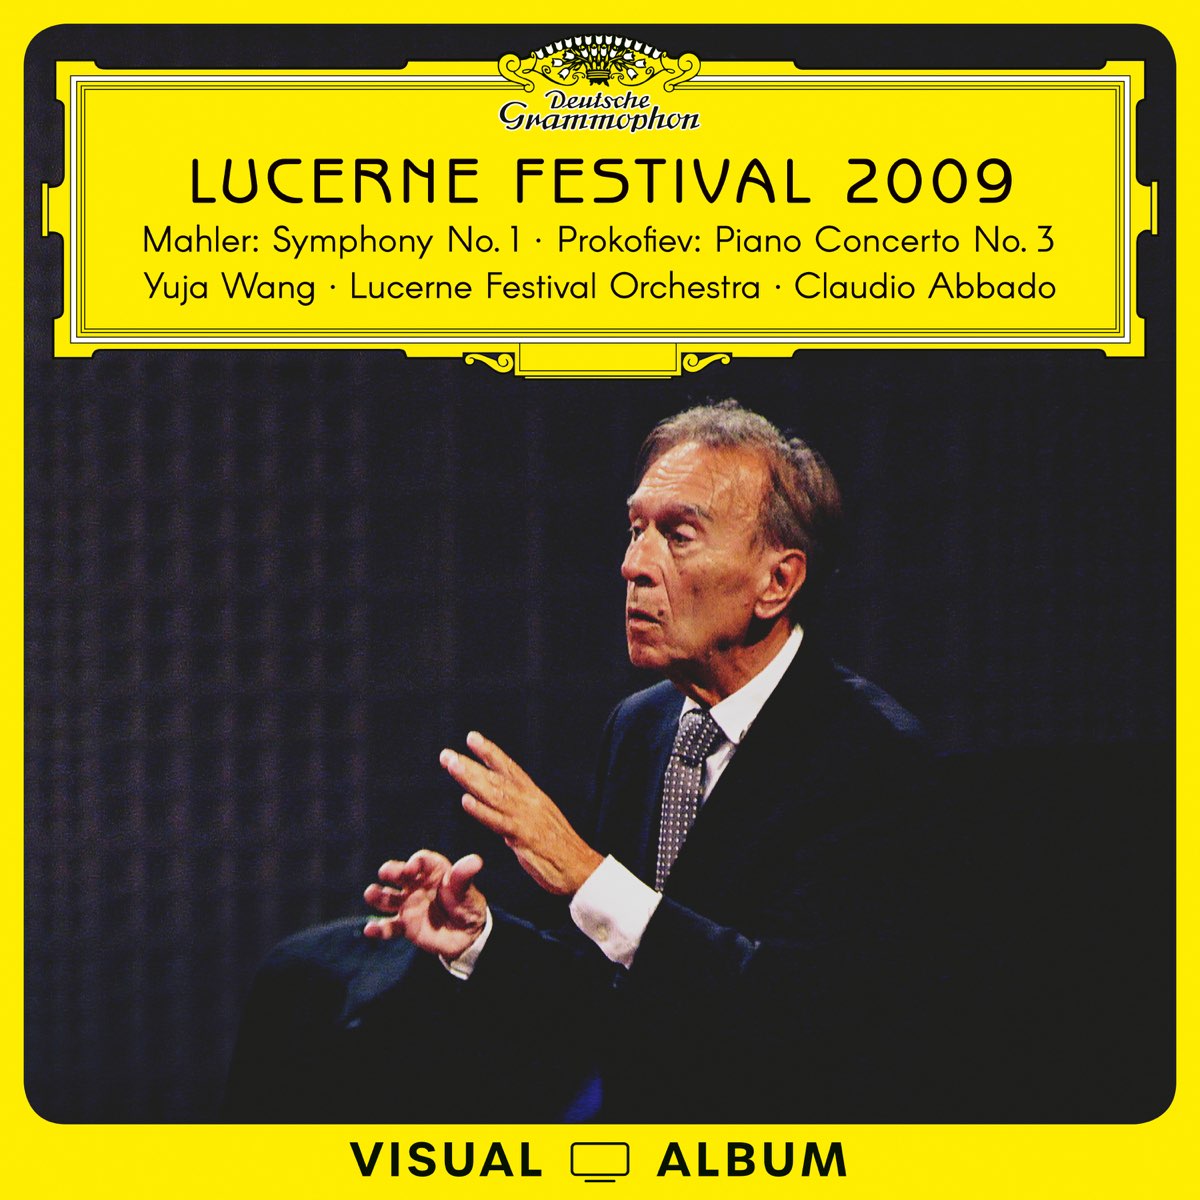 Lucerne Festival 2009 (Mahler: Symphony No. 1 / Prokofiev: Piano Concerto  No. 3) [Live / Visual Album] - Album by Yuja Wang, Lucerne Festival  Orchestra & Claudio Abbado - Apple Music